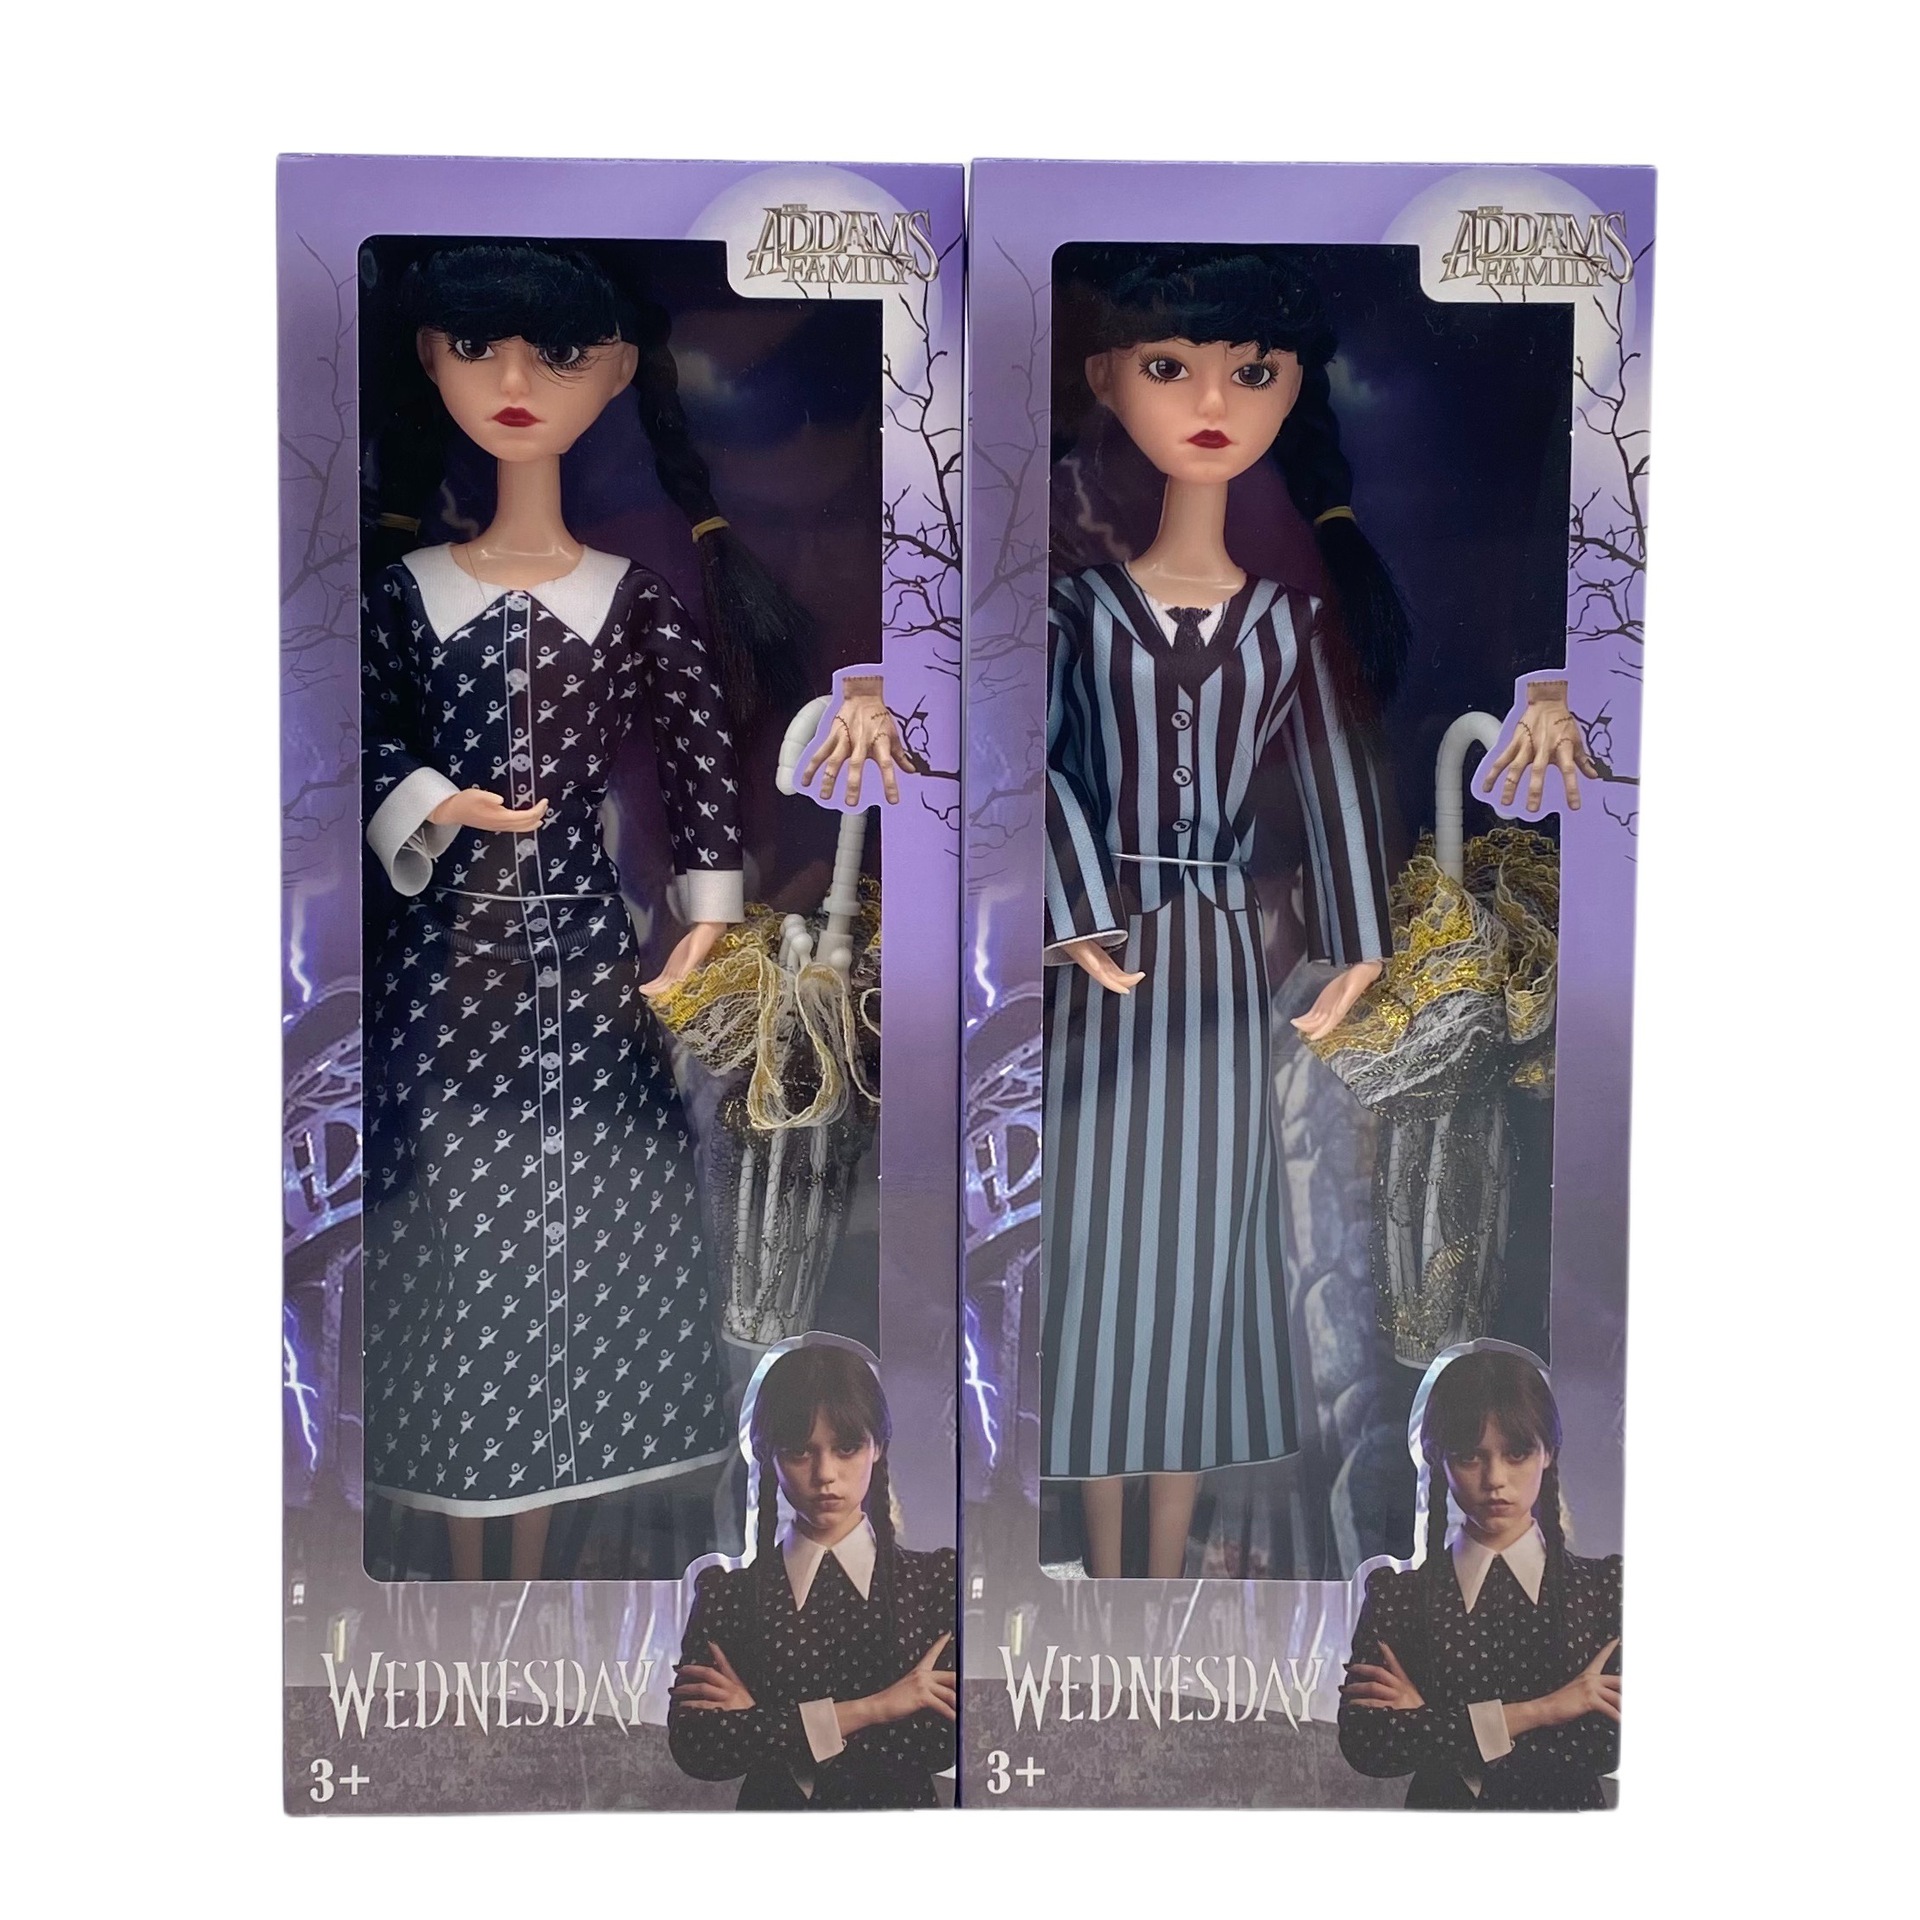 ルーファミー水曜日のaddams人形、アダムスファミリープラスチック人形、11.5インチ、半袖ストライプドレス、子供の女の子のための誕生日プレゼント